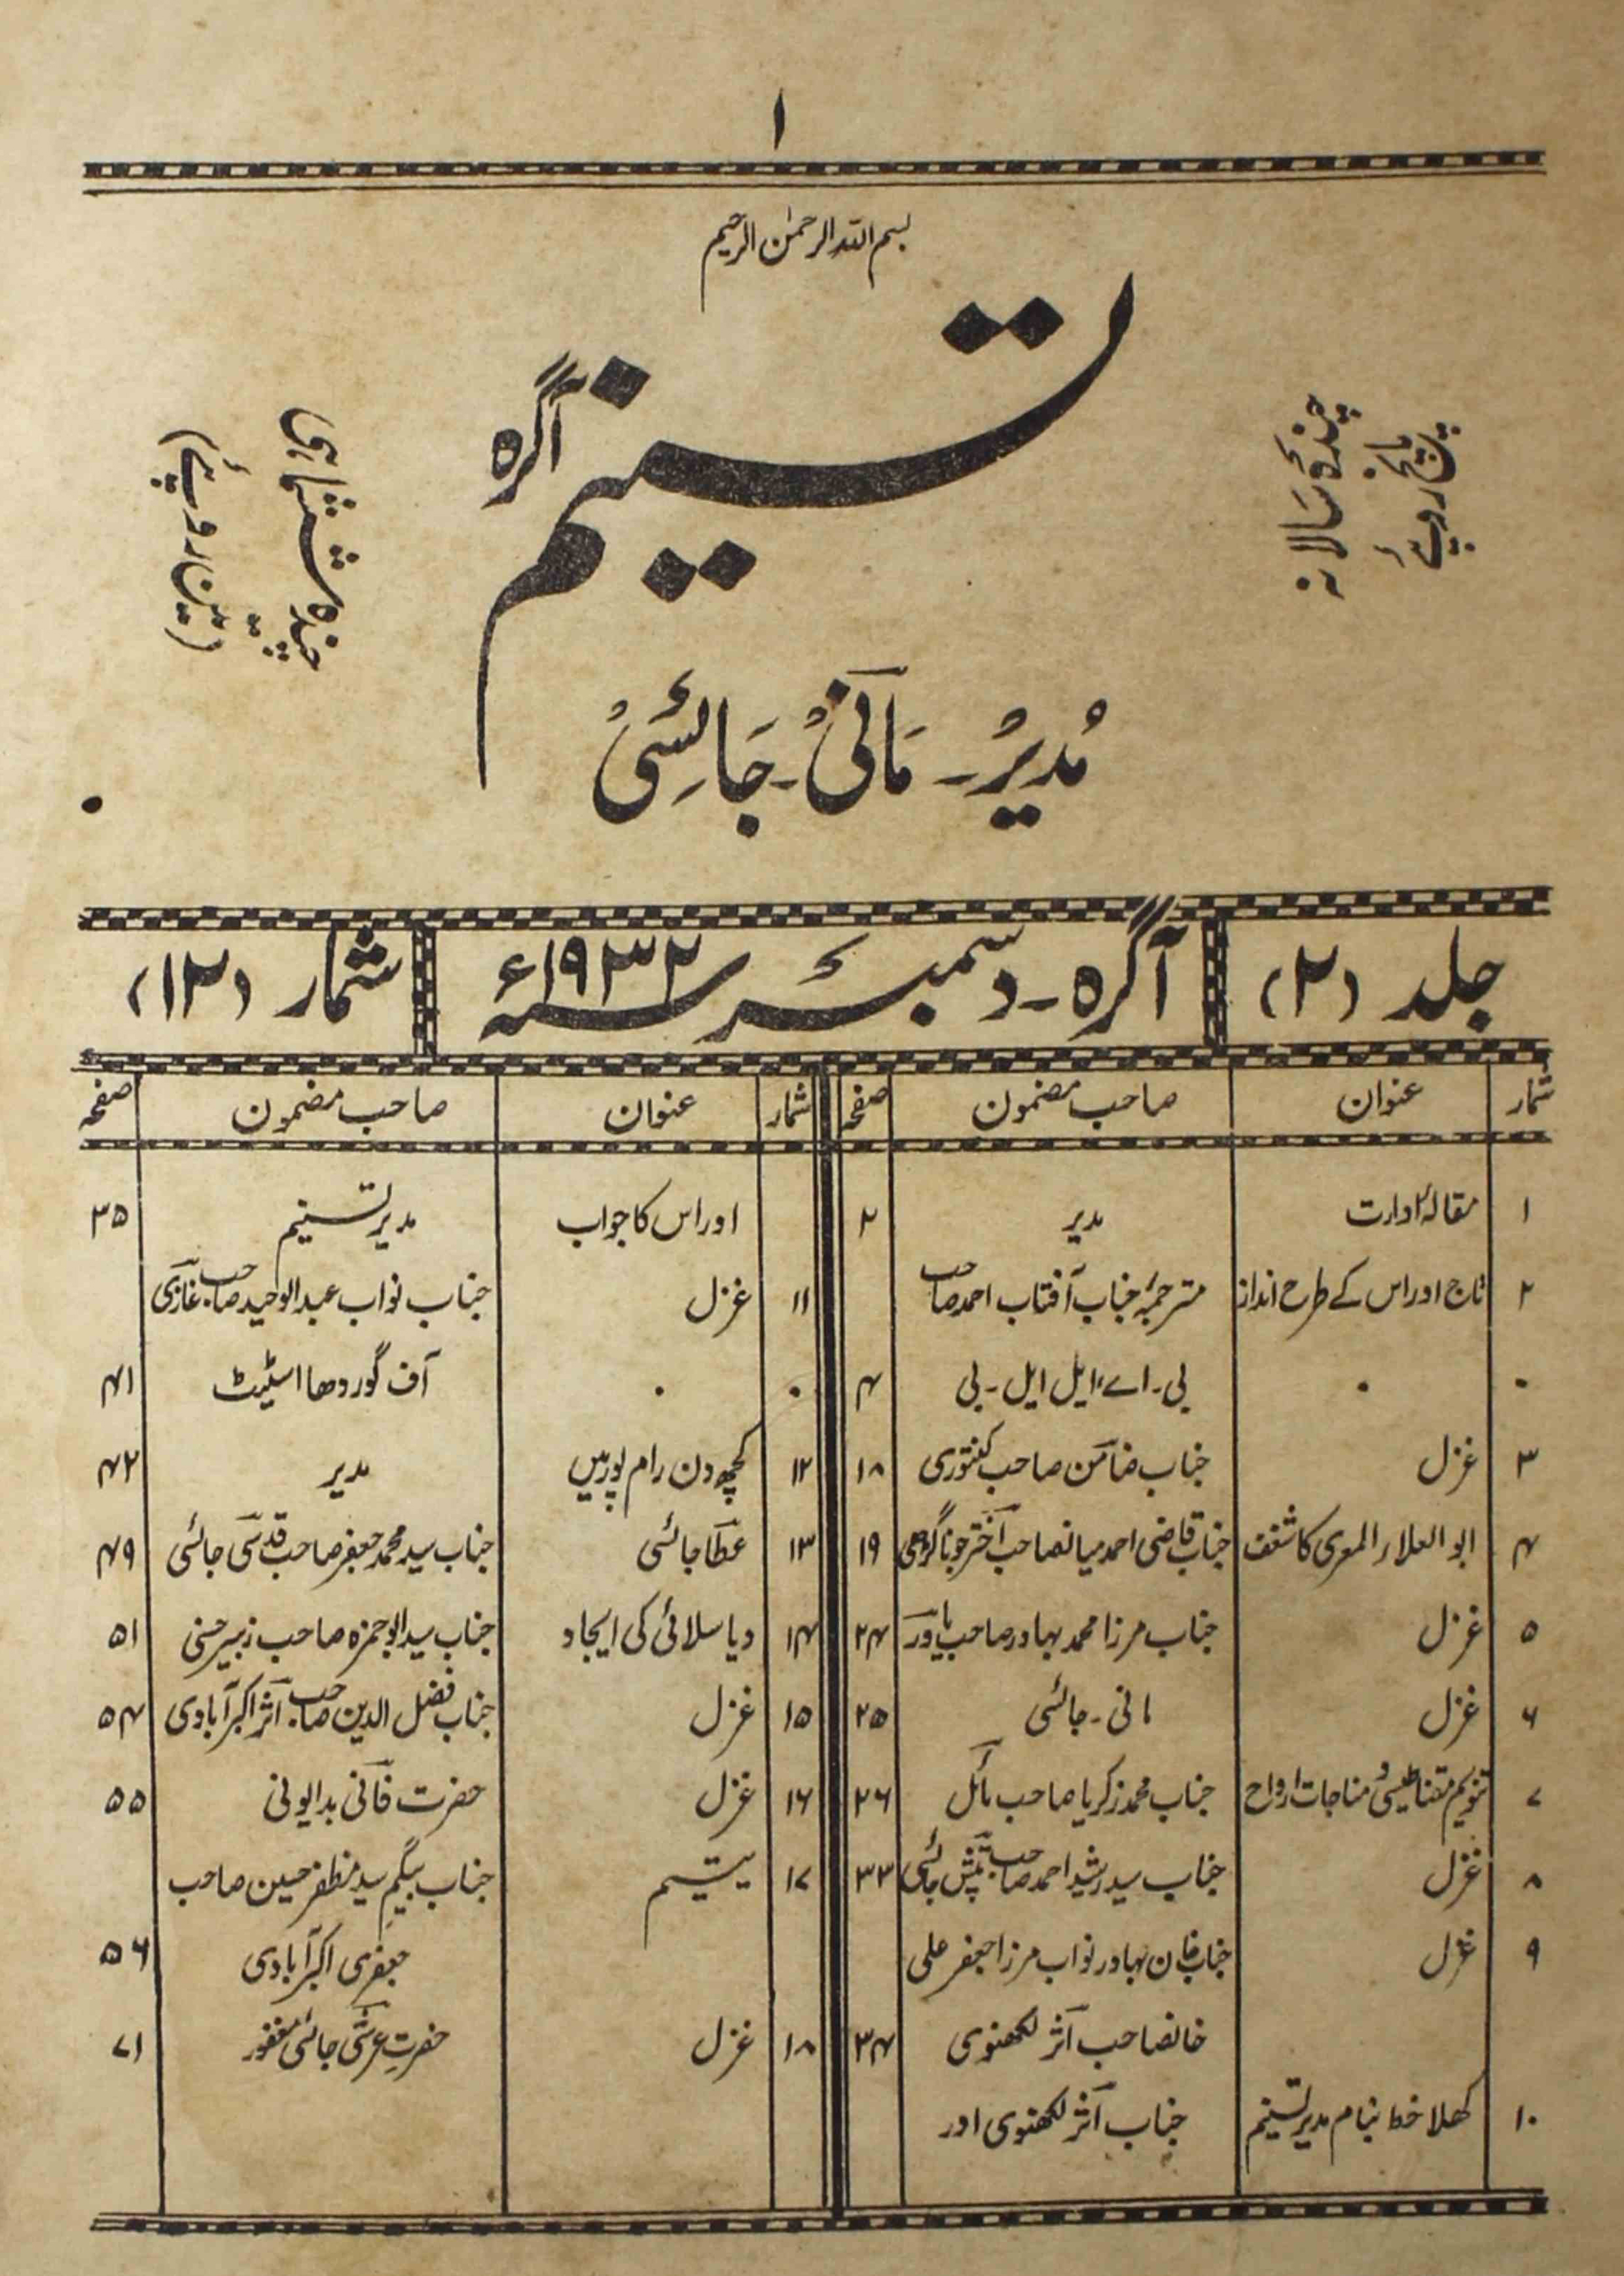 tasneem-shumaara-number-012-mani-jayasi-magazines